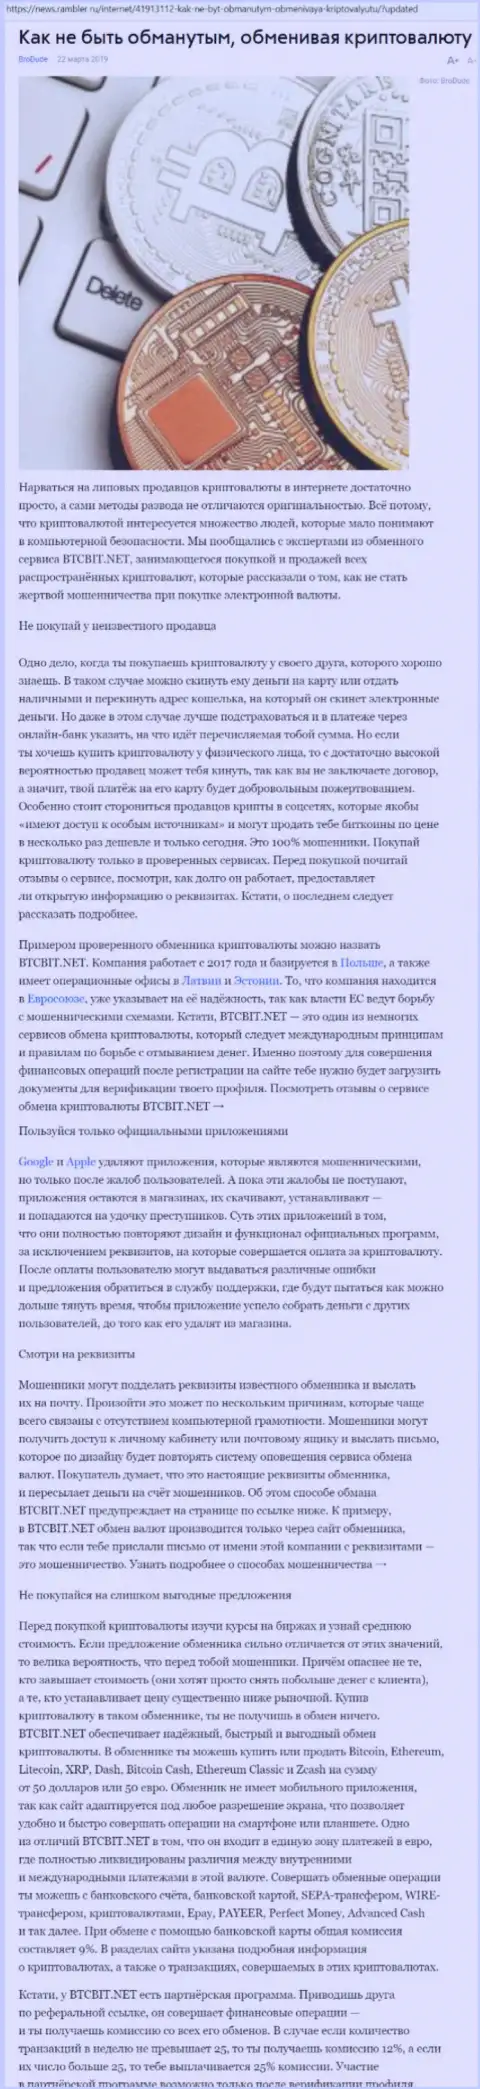 Статья об организации БТЦБИТ на news rambler ru